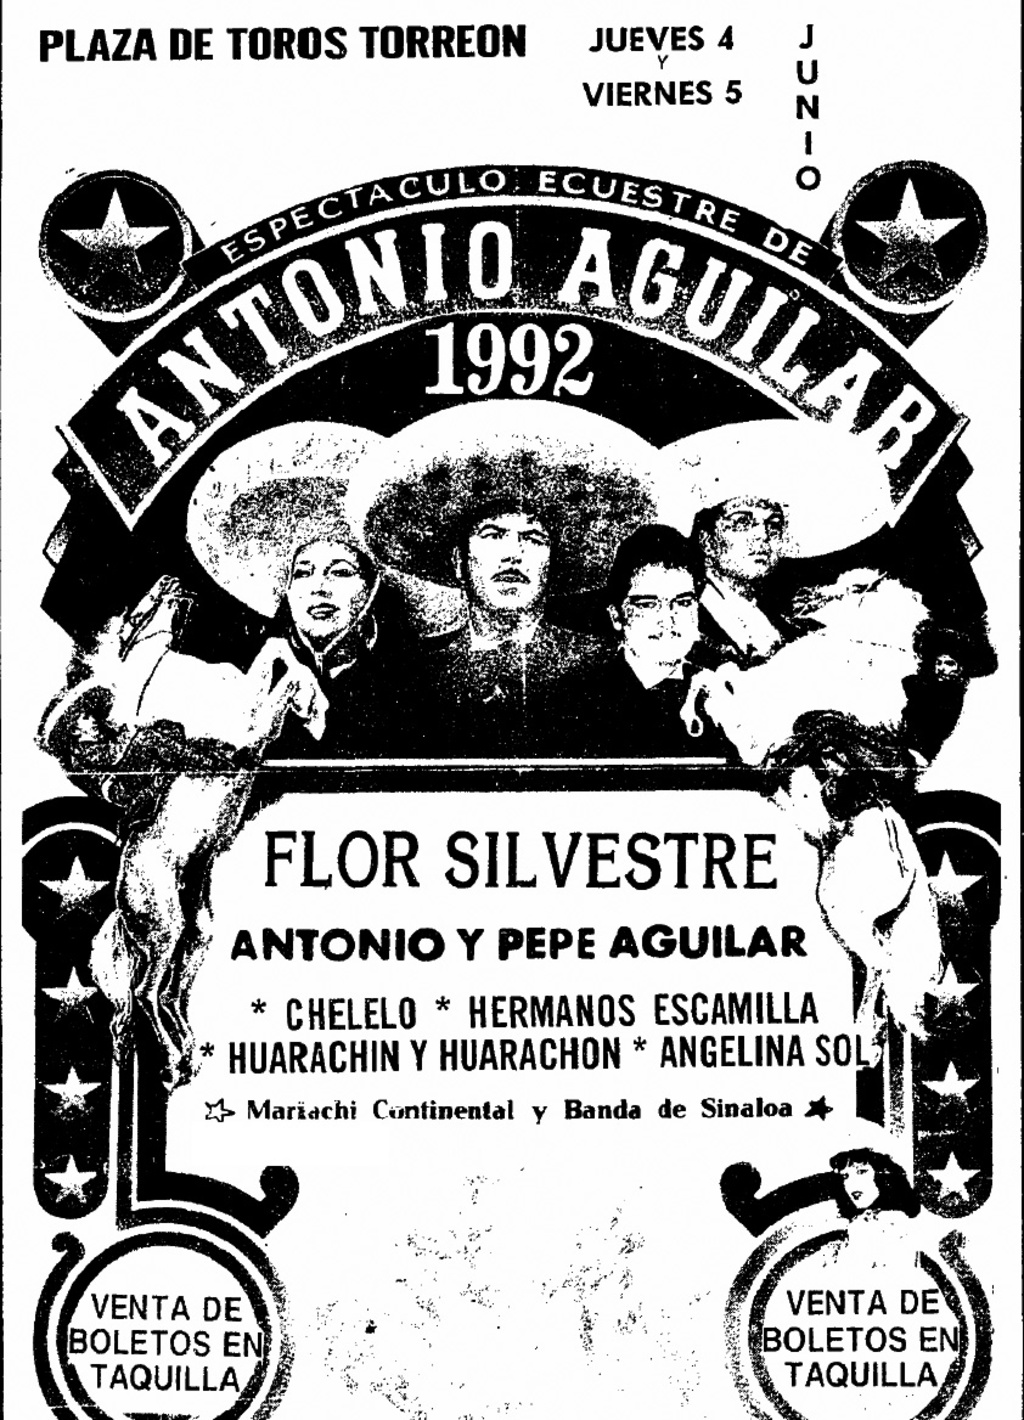 Evento. La legendaria gira de Jaripeo de la familia Aguilar se presentó en la Plaza de Toros Torreón en múltiples ocasiones.